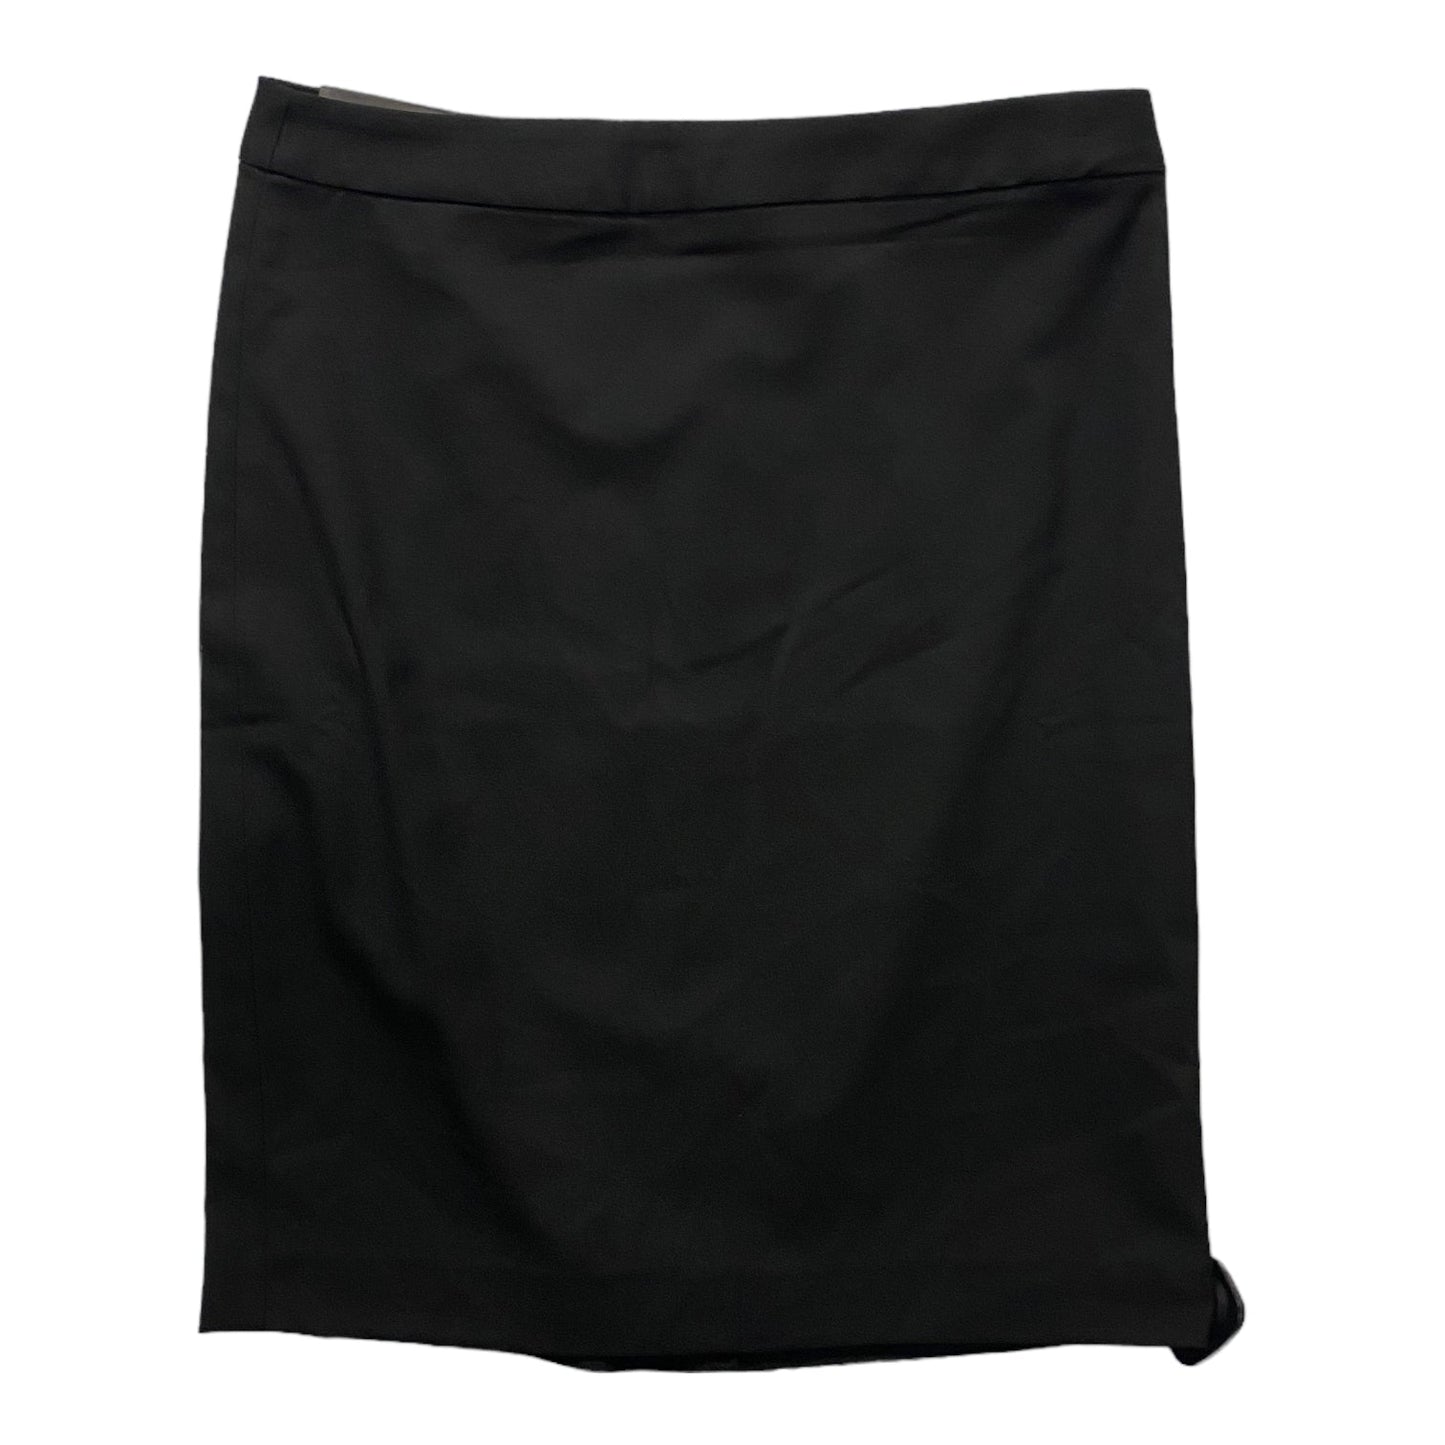 Black Skirt Mini & Short Banana Republic, Size 6